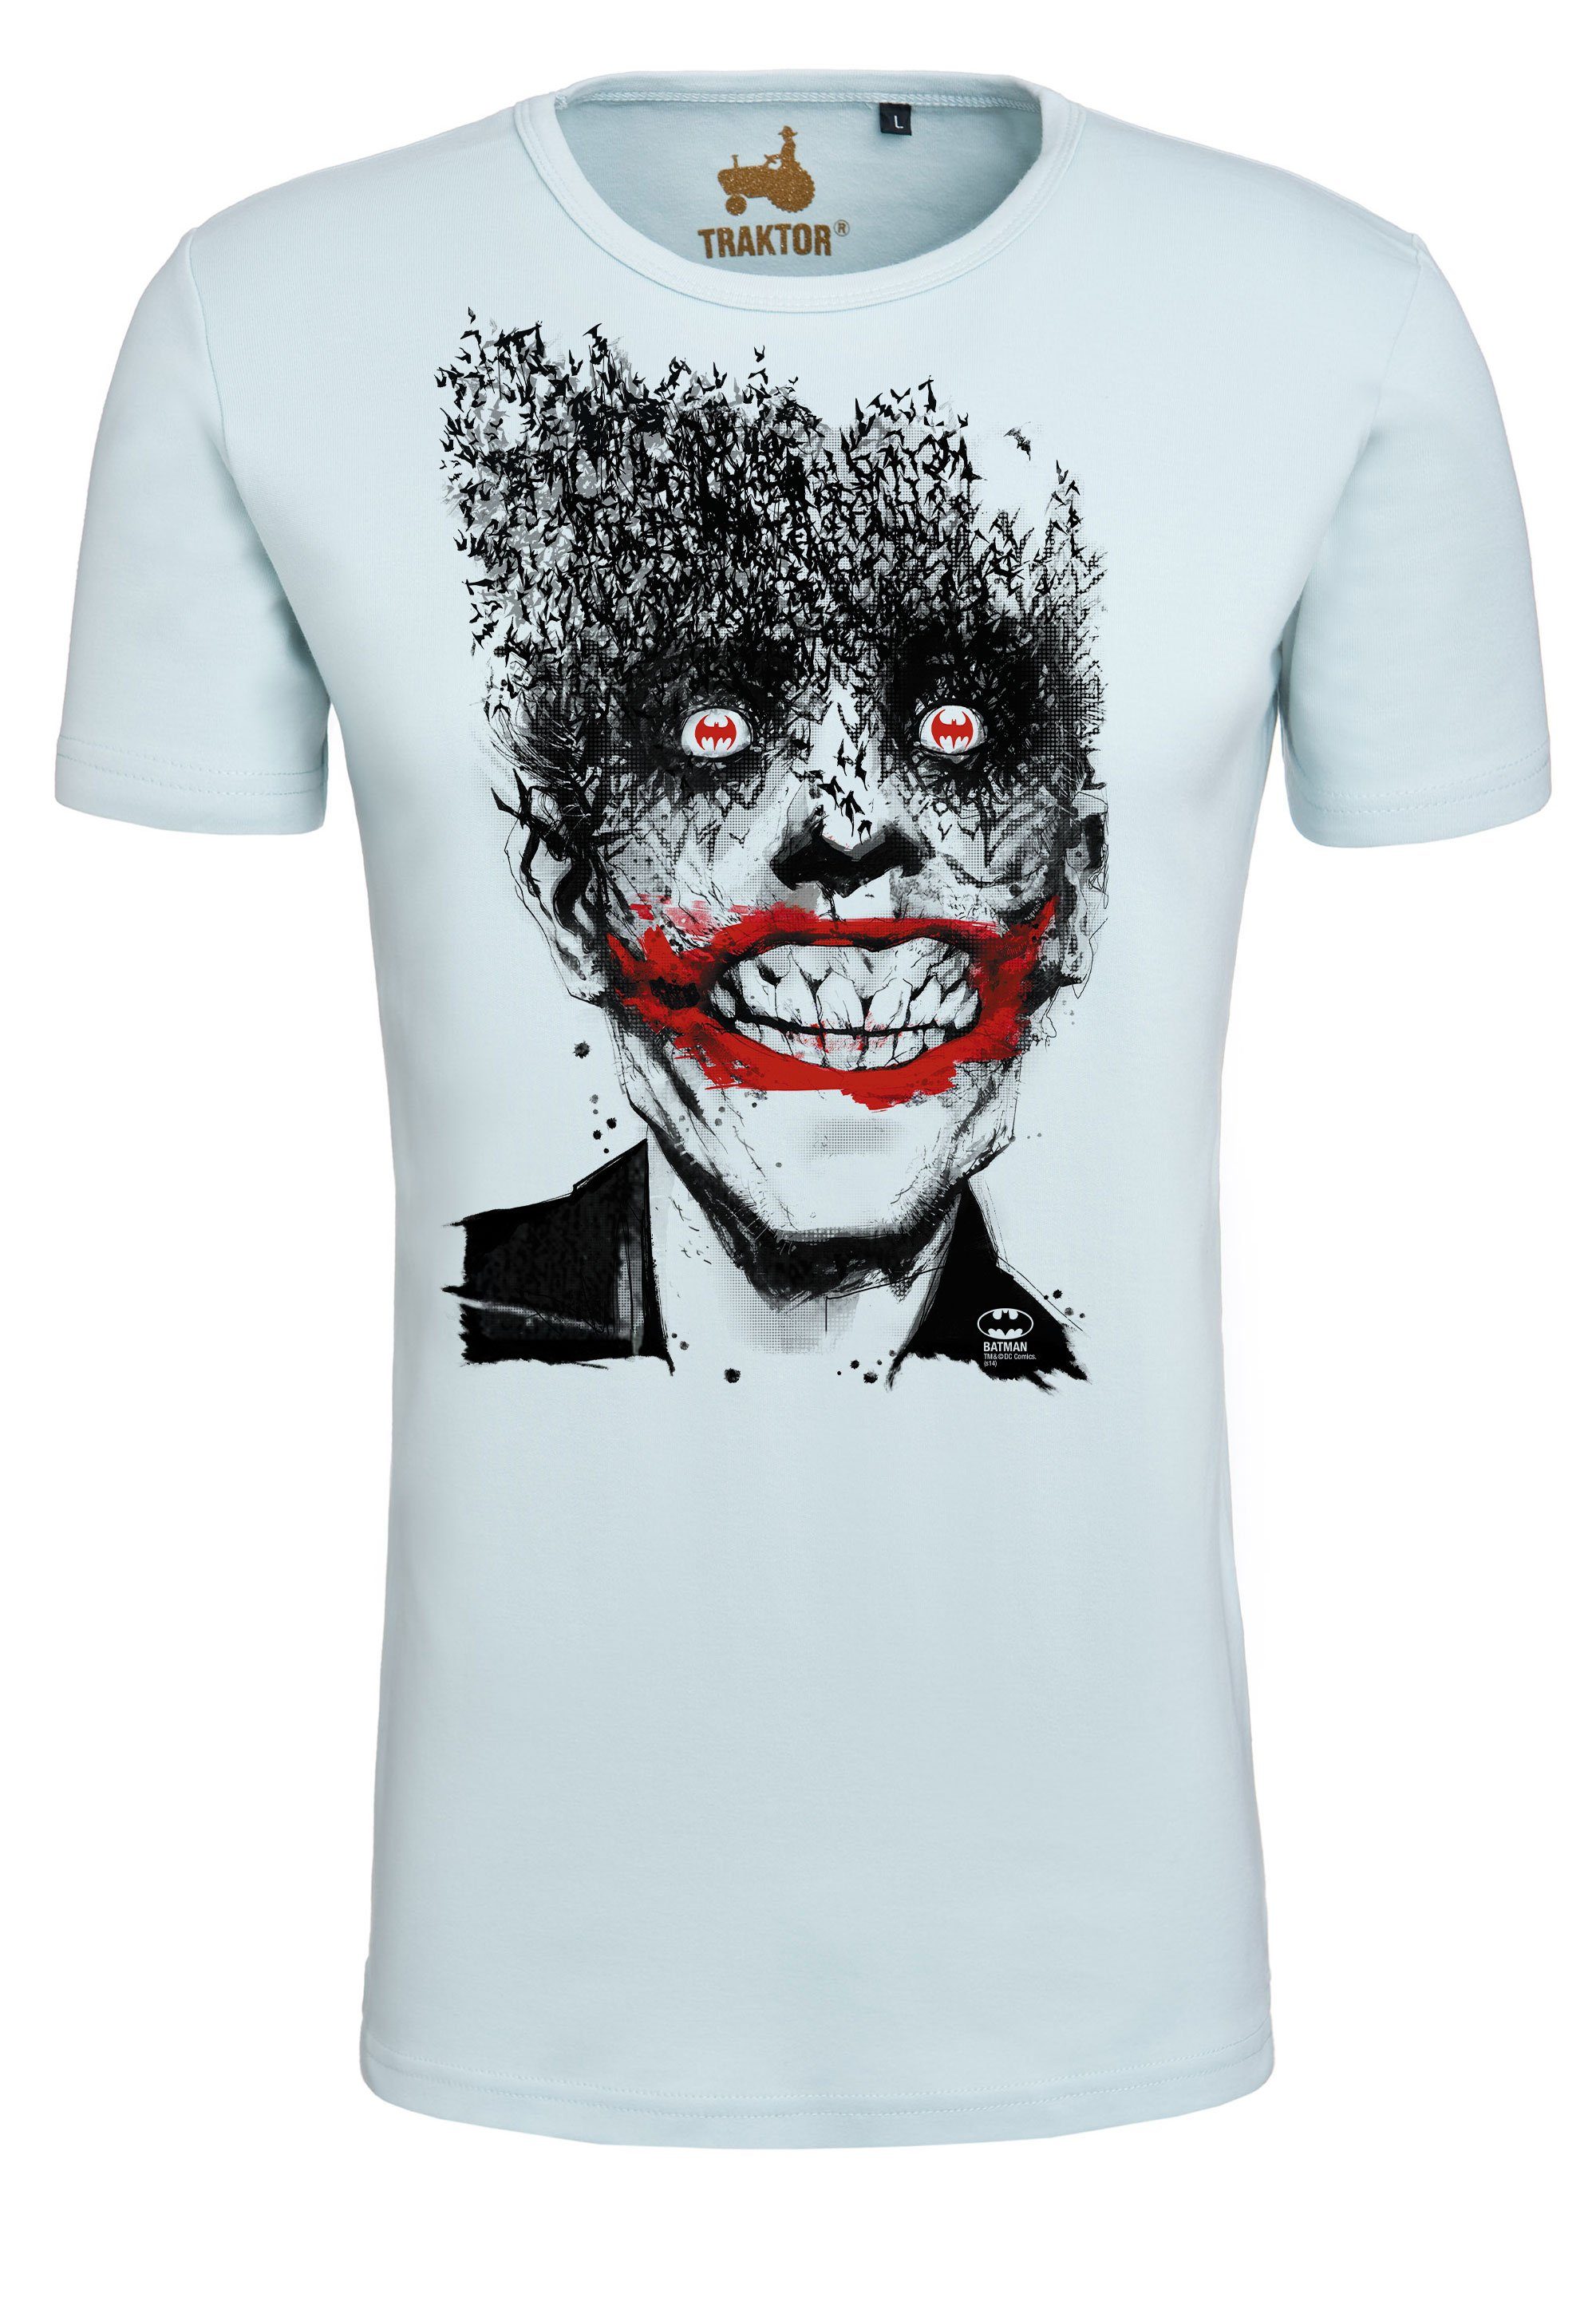 LOGOSHIRT T-Shirt trendigem mit Batman Joker Superschurken-Print Bats 